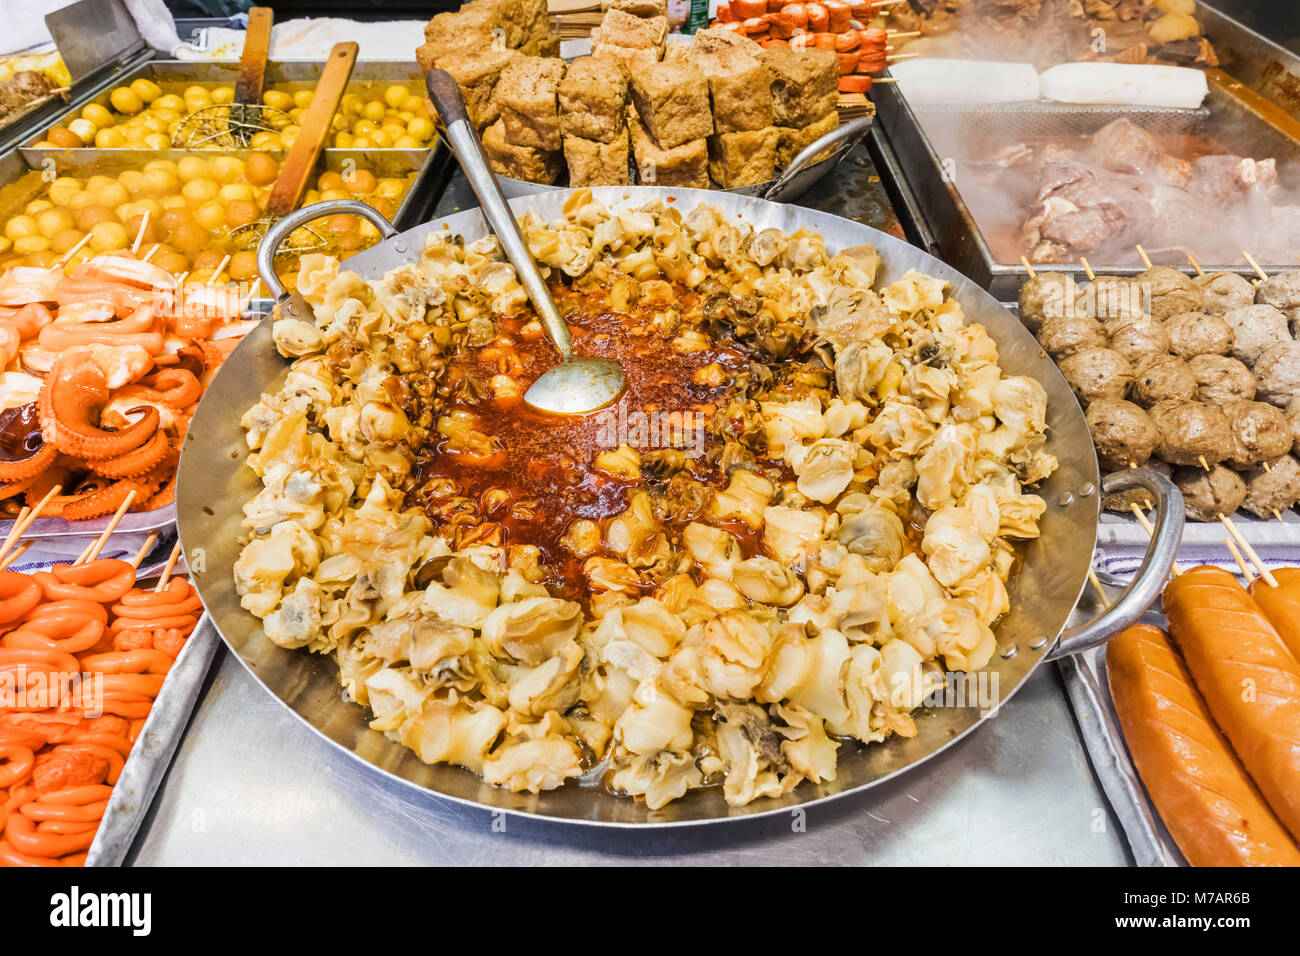 China, Hong Kong, Mong Kok, Street Food Stock Photo